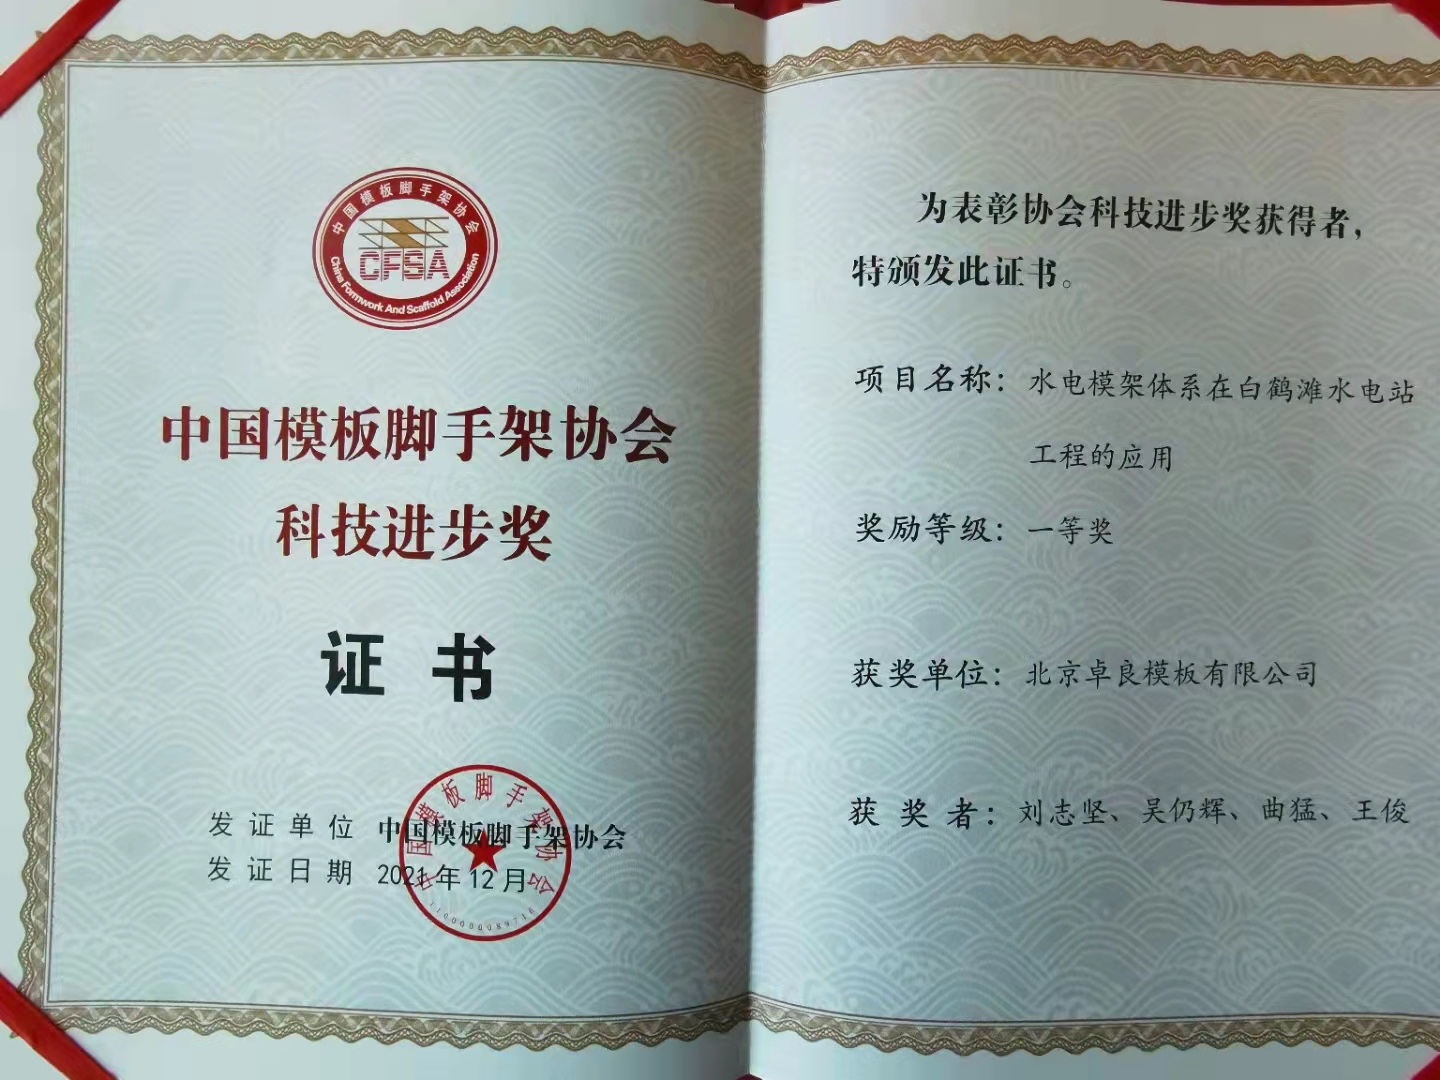 祝賀公司《水電模架體系在白鶴灘水電站工程的應用》榮獲中國模板腳手架協會科技進步一等獎